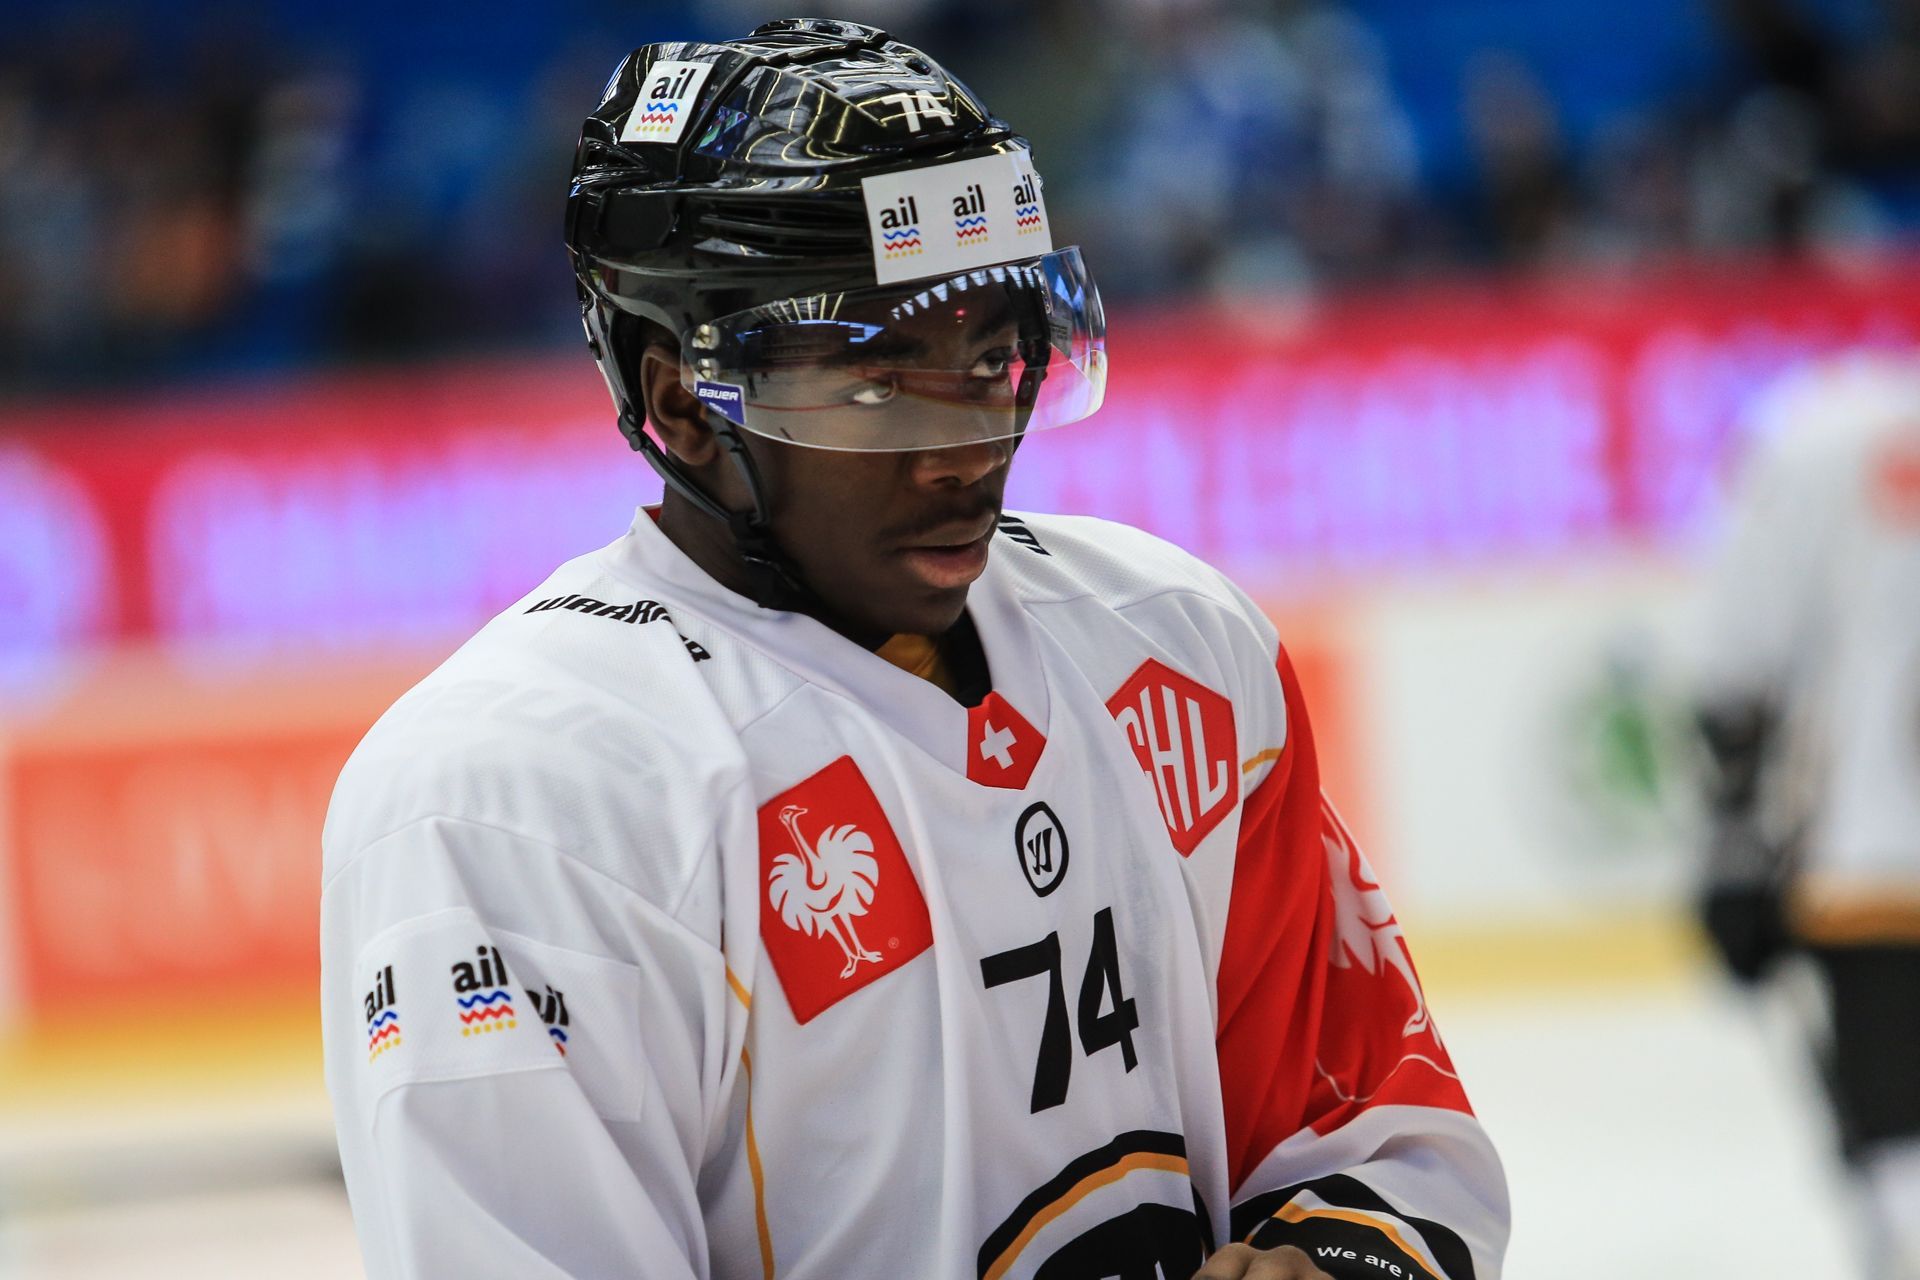 Hokejová Liga mistrů 2018/19: HC Škoda Plzeň - HC Lugano